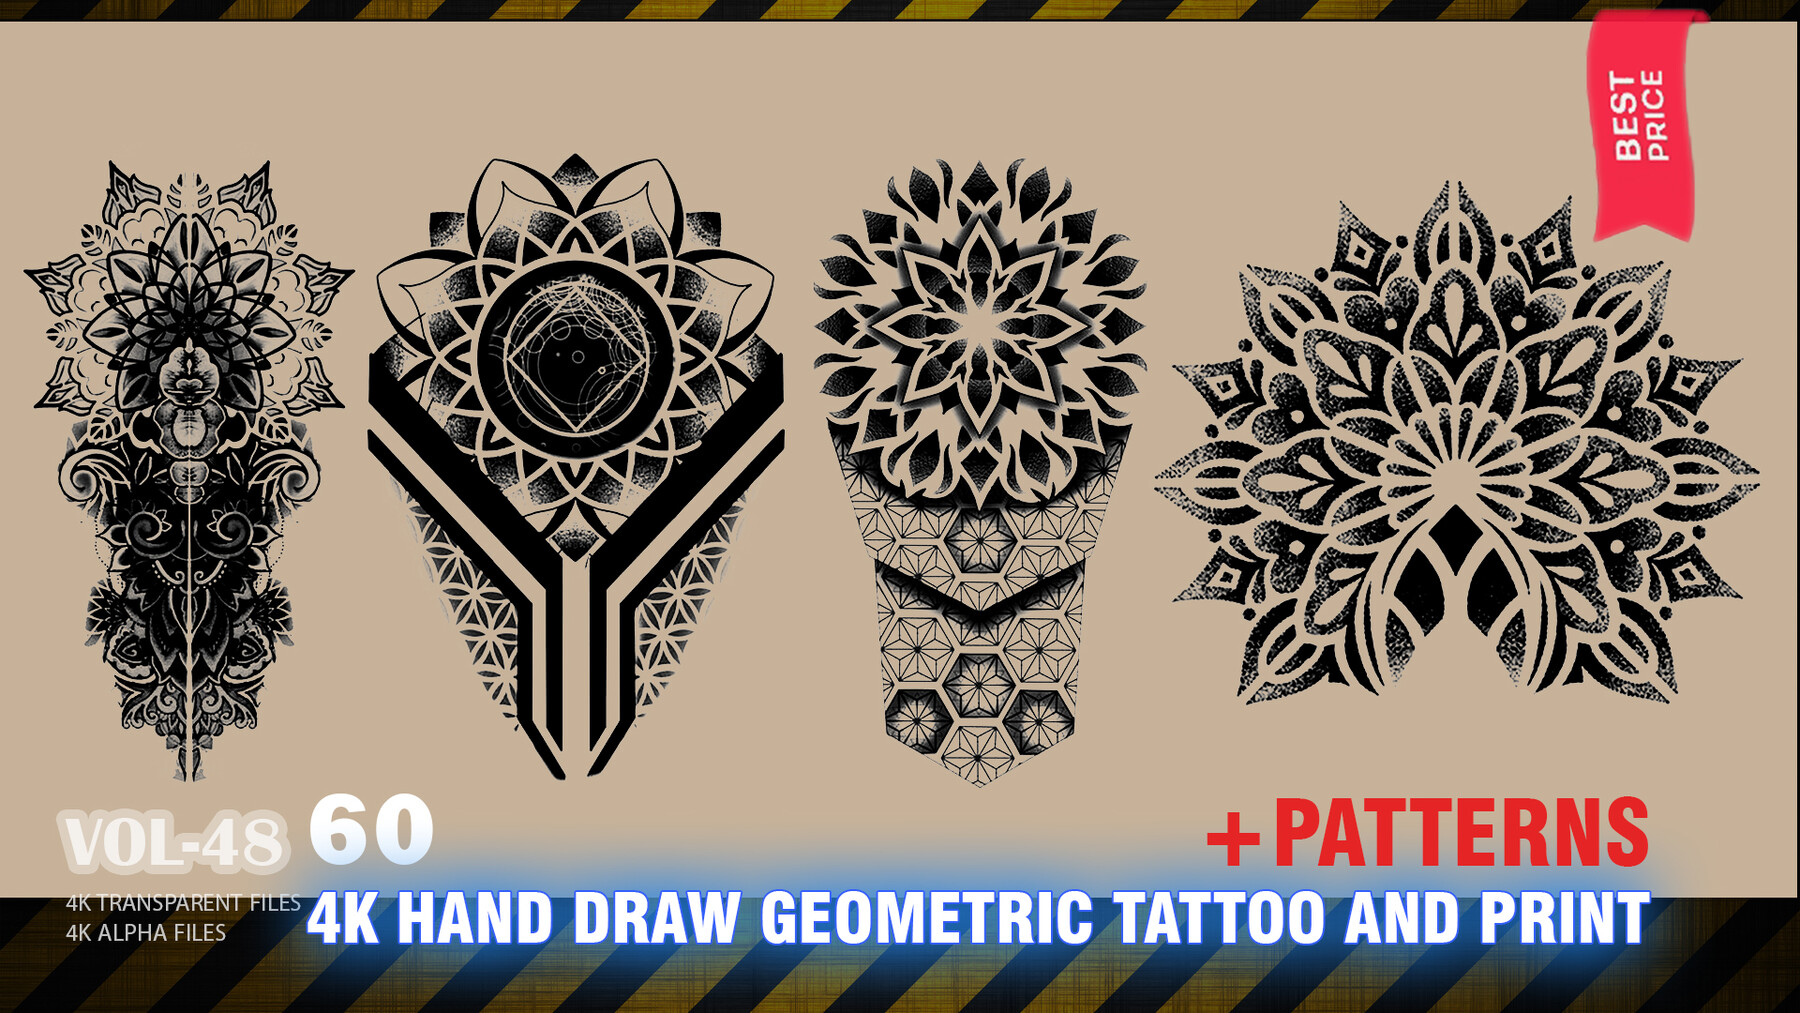 Geometric Tattoo sleeve done by me, tattoopelikan, Poland, 2022 : r/tattoo